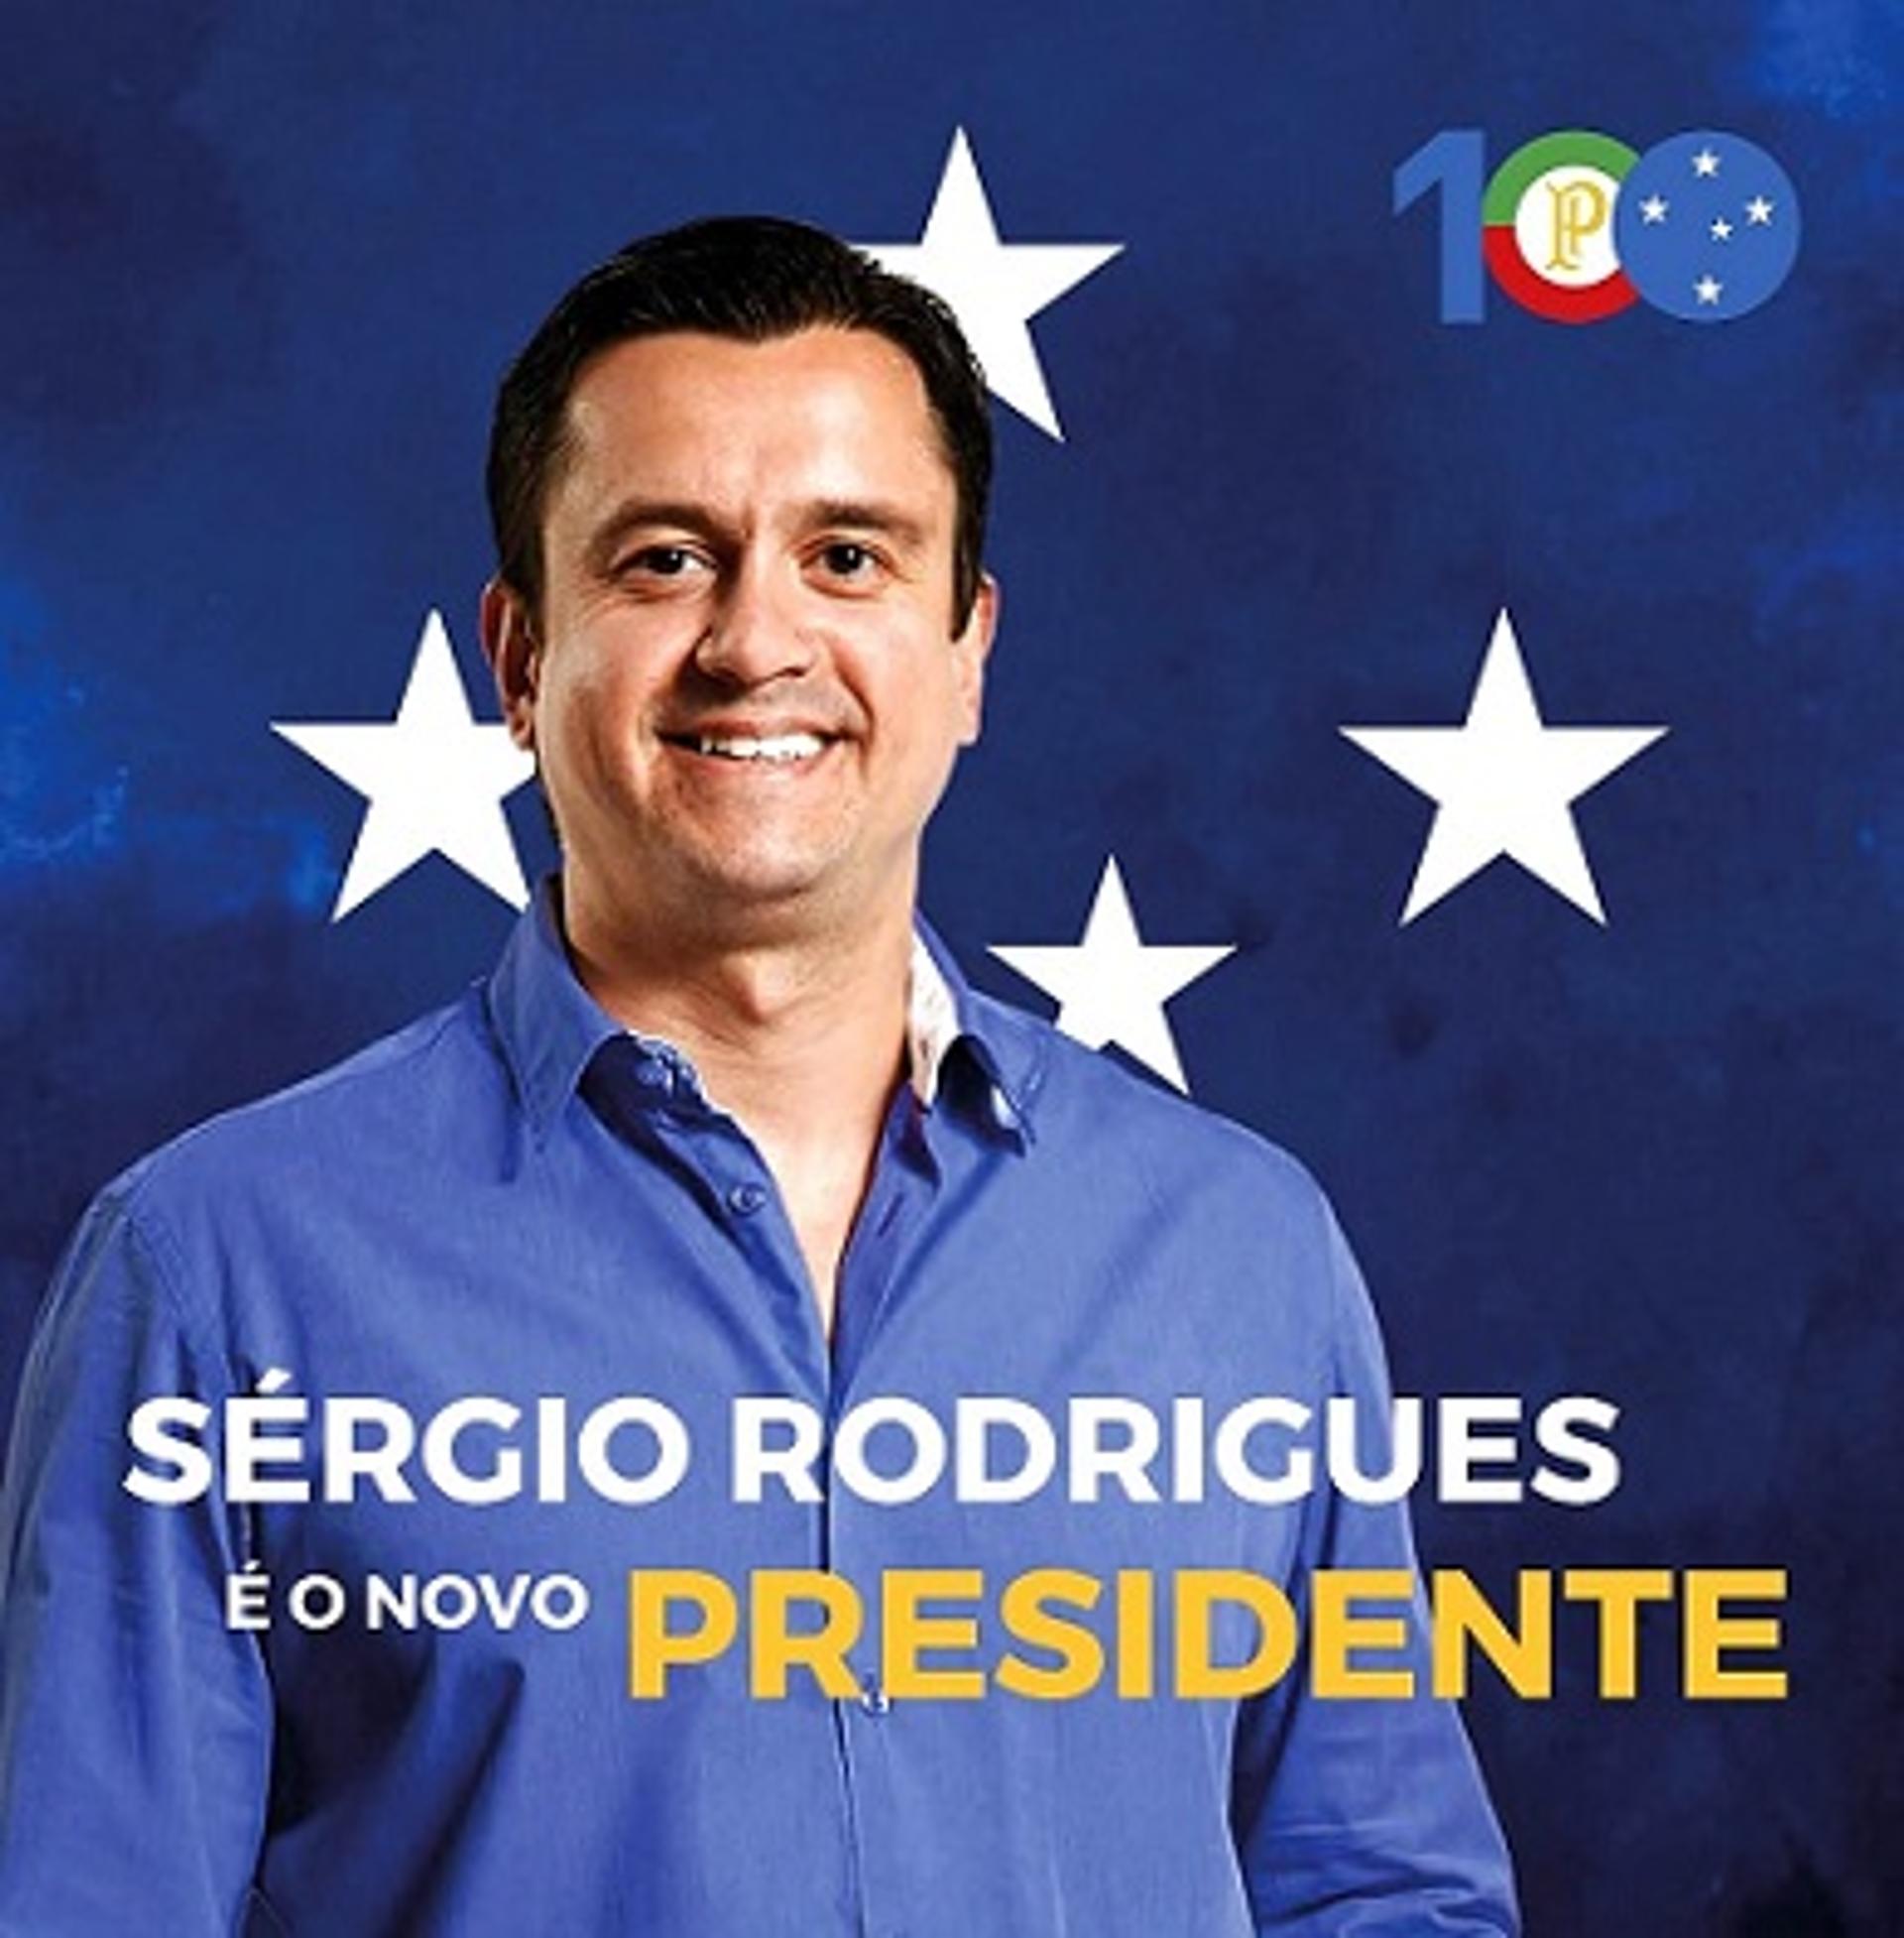 Sérgio Rodrigues venceu o pleito, após tentar e perder em 2017 para Wagner Pires de Sá